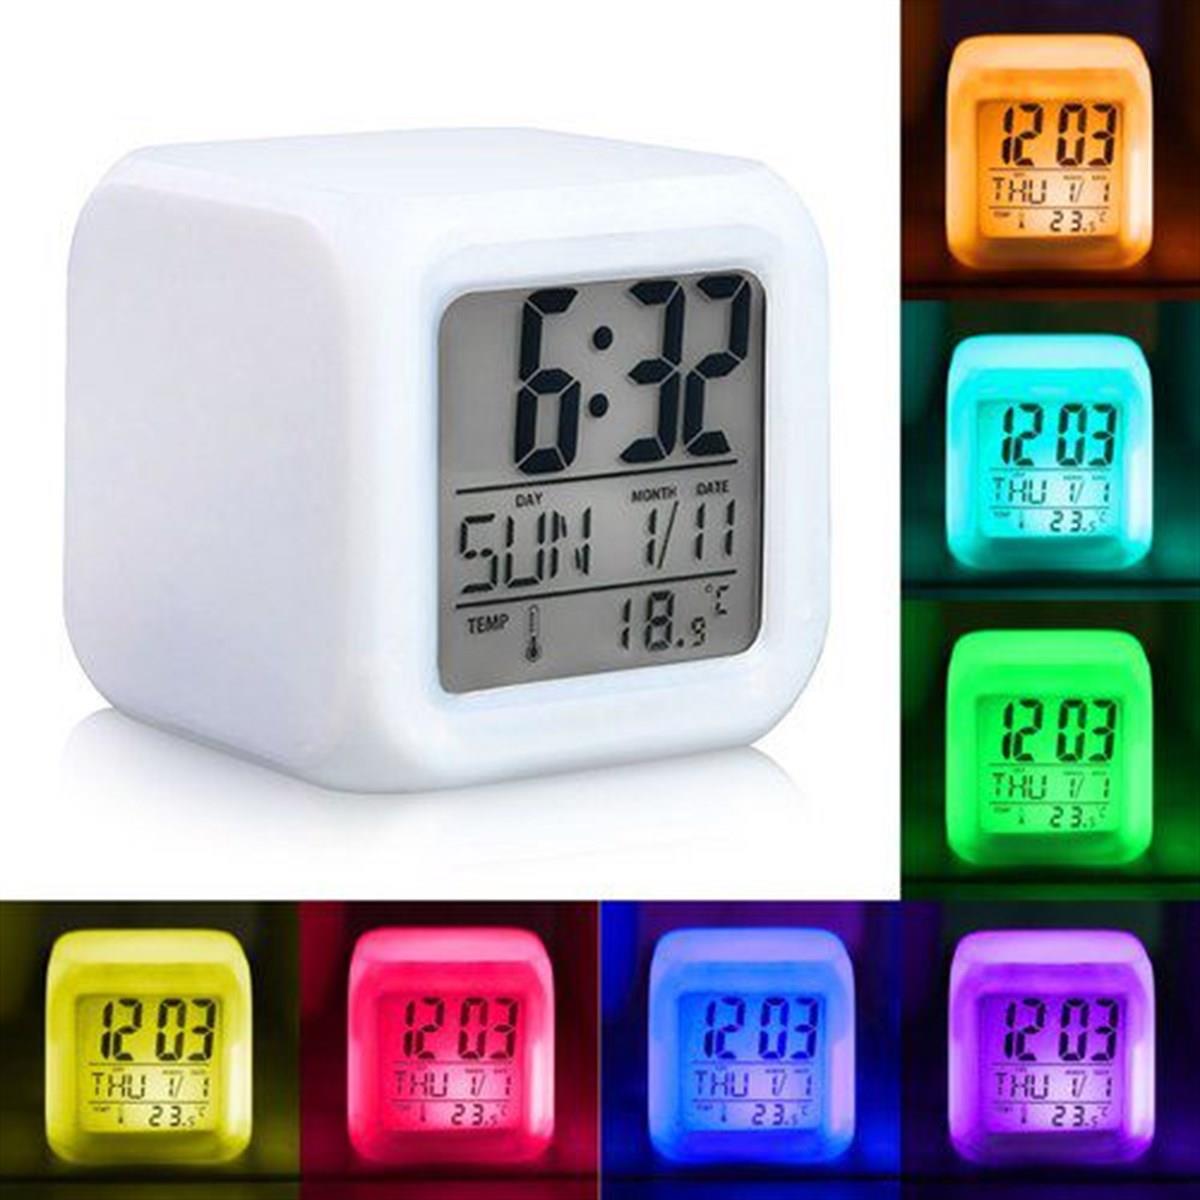 Taraftara Özel İsim Yazılı 7 Renk Değiştiren Alarmlı Dijital Küp Saat -  Çılgın Trend Ürünleri